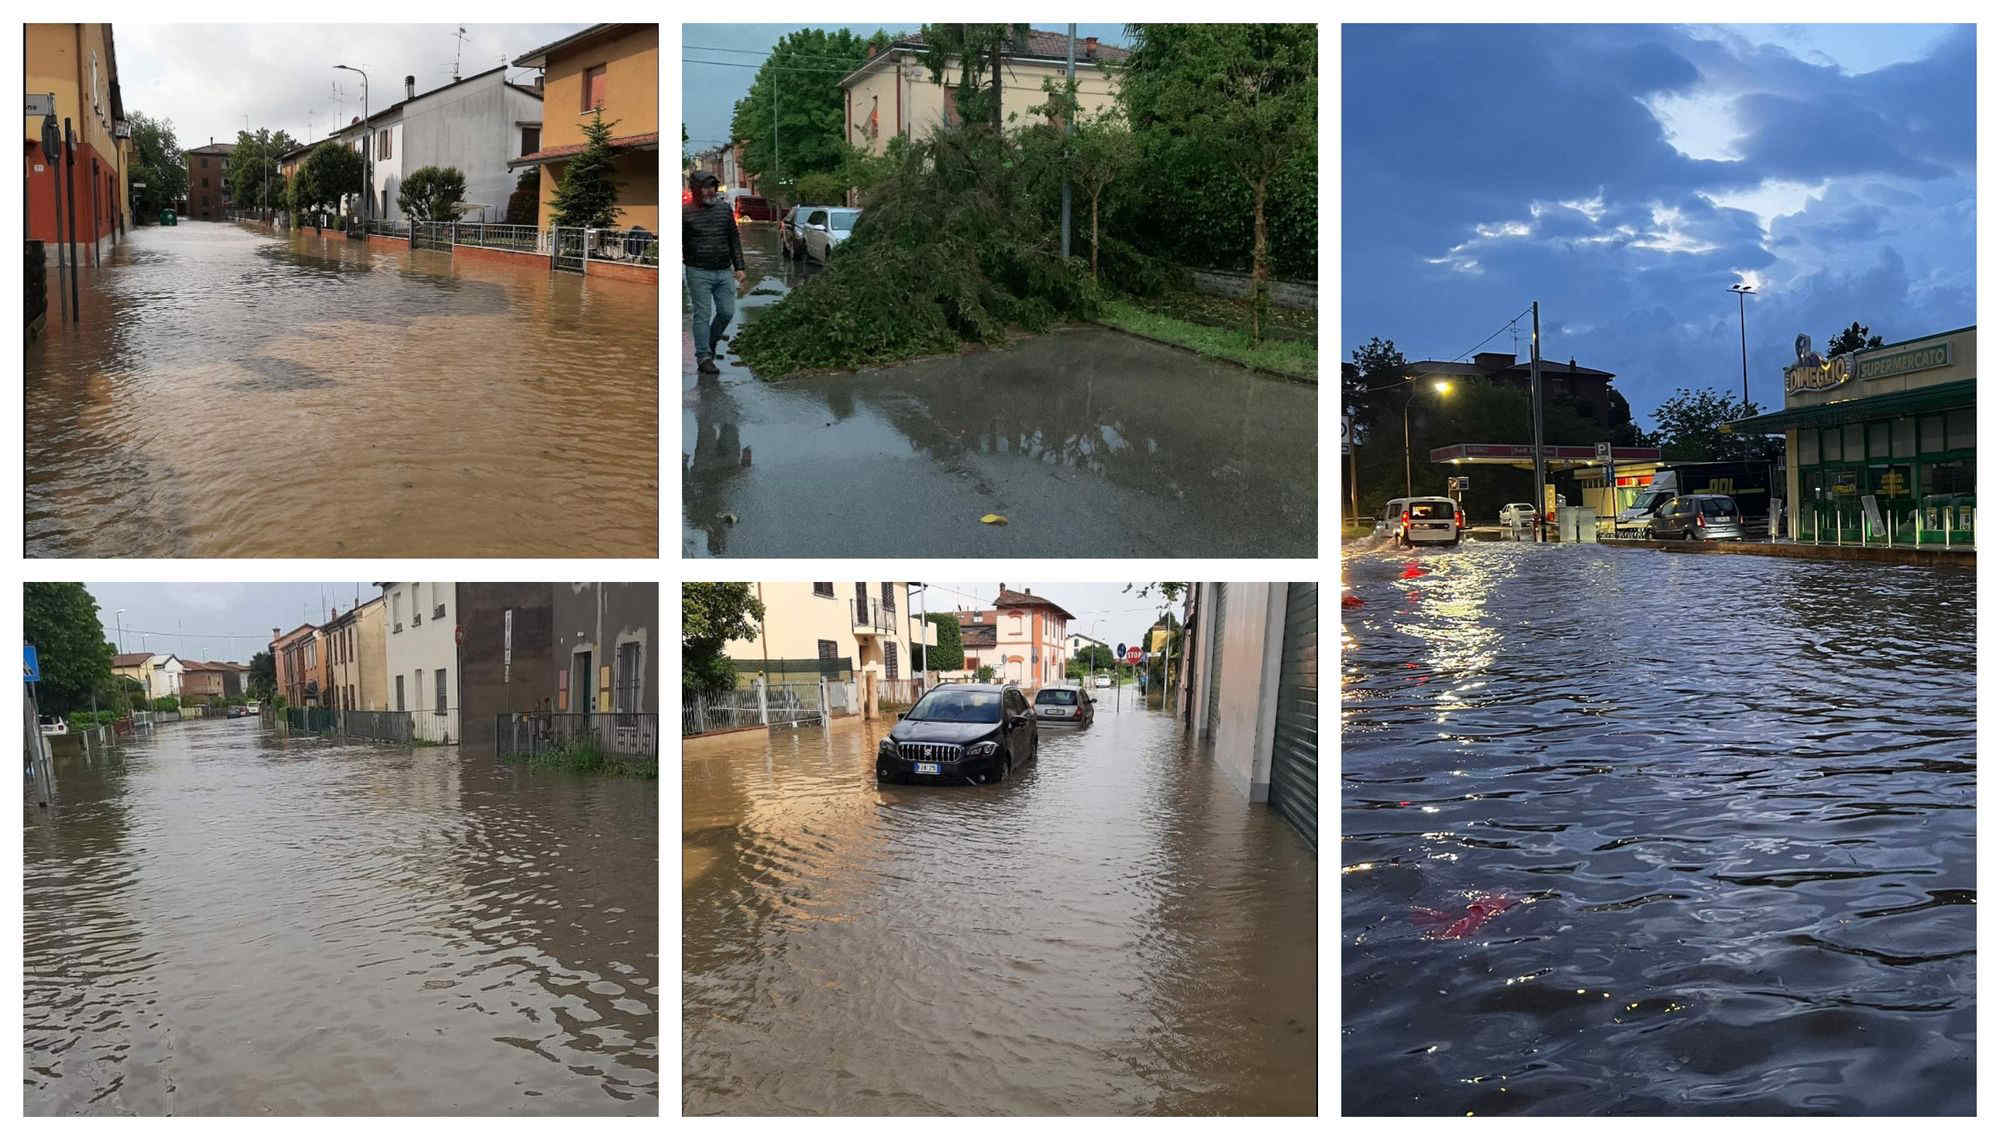 Maltempo in Emilia Romagna: danni e disagi, tra grandine e allagamenti